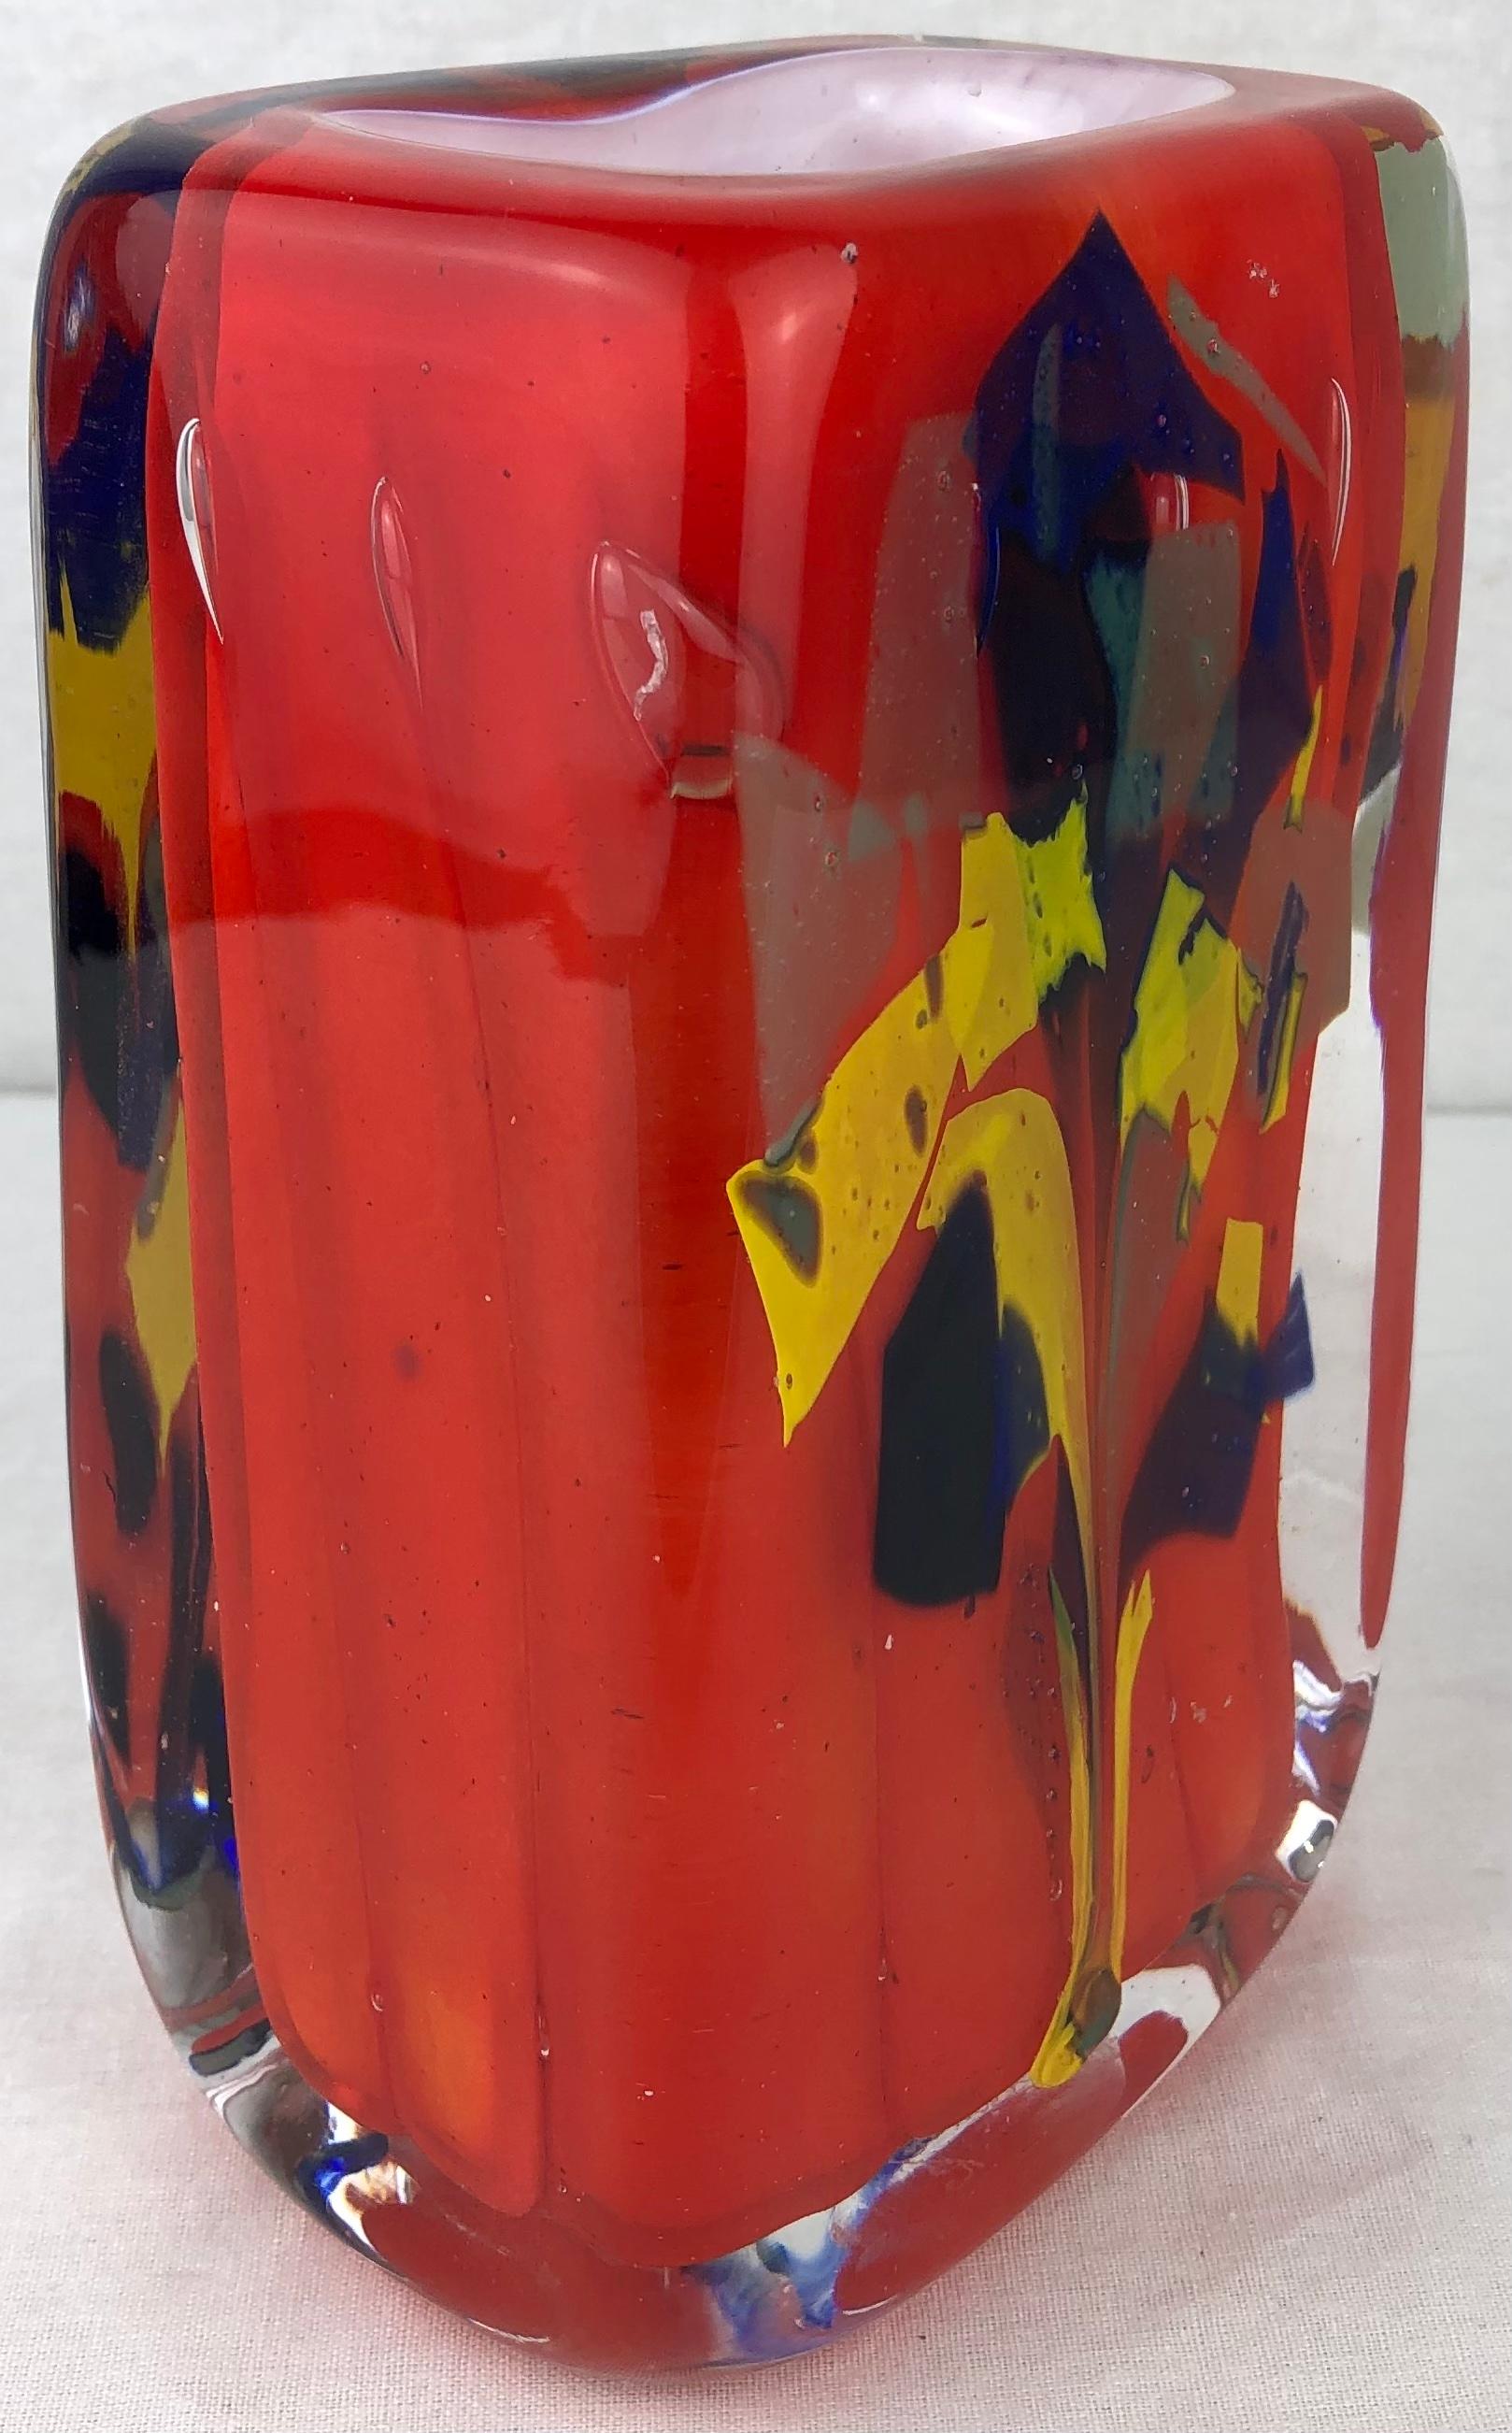 Superbe vase en verre d'art français du milieu du siècle dernier, signé Raymond Branly.
Verre d'art stratifié exquis, fabriqué à la main. 

Un bel objet décoratif qui rehausserait n'importe quelle étagère ou plateau de table.
   
Mesures :